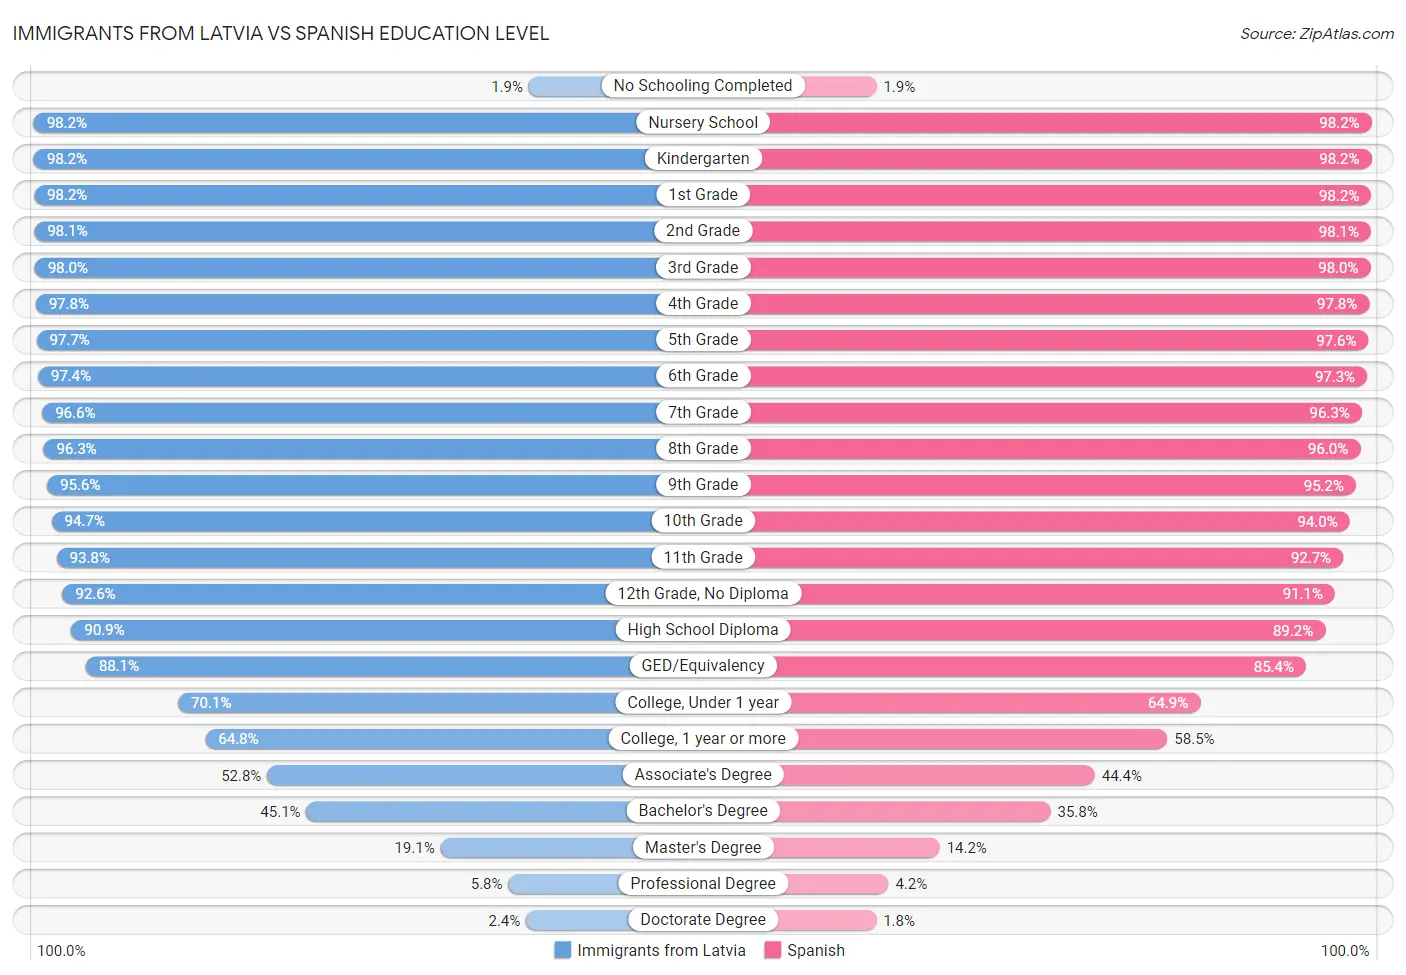 Immigrants from Latvia vs Spanish Education Level